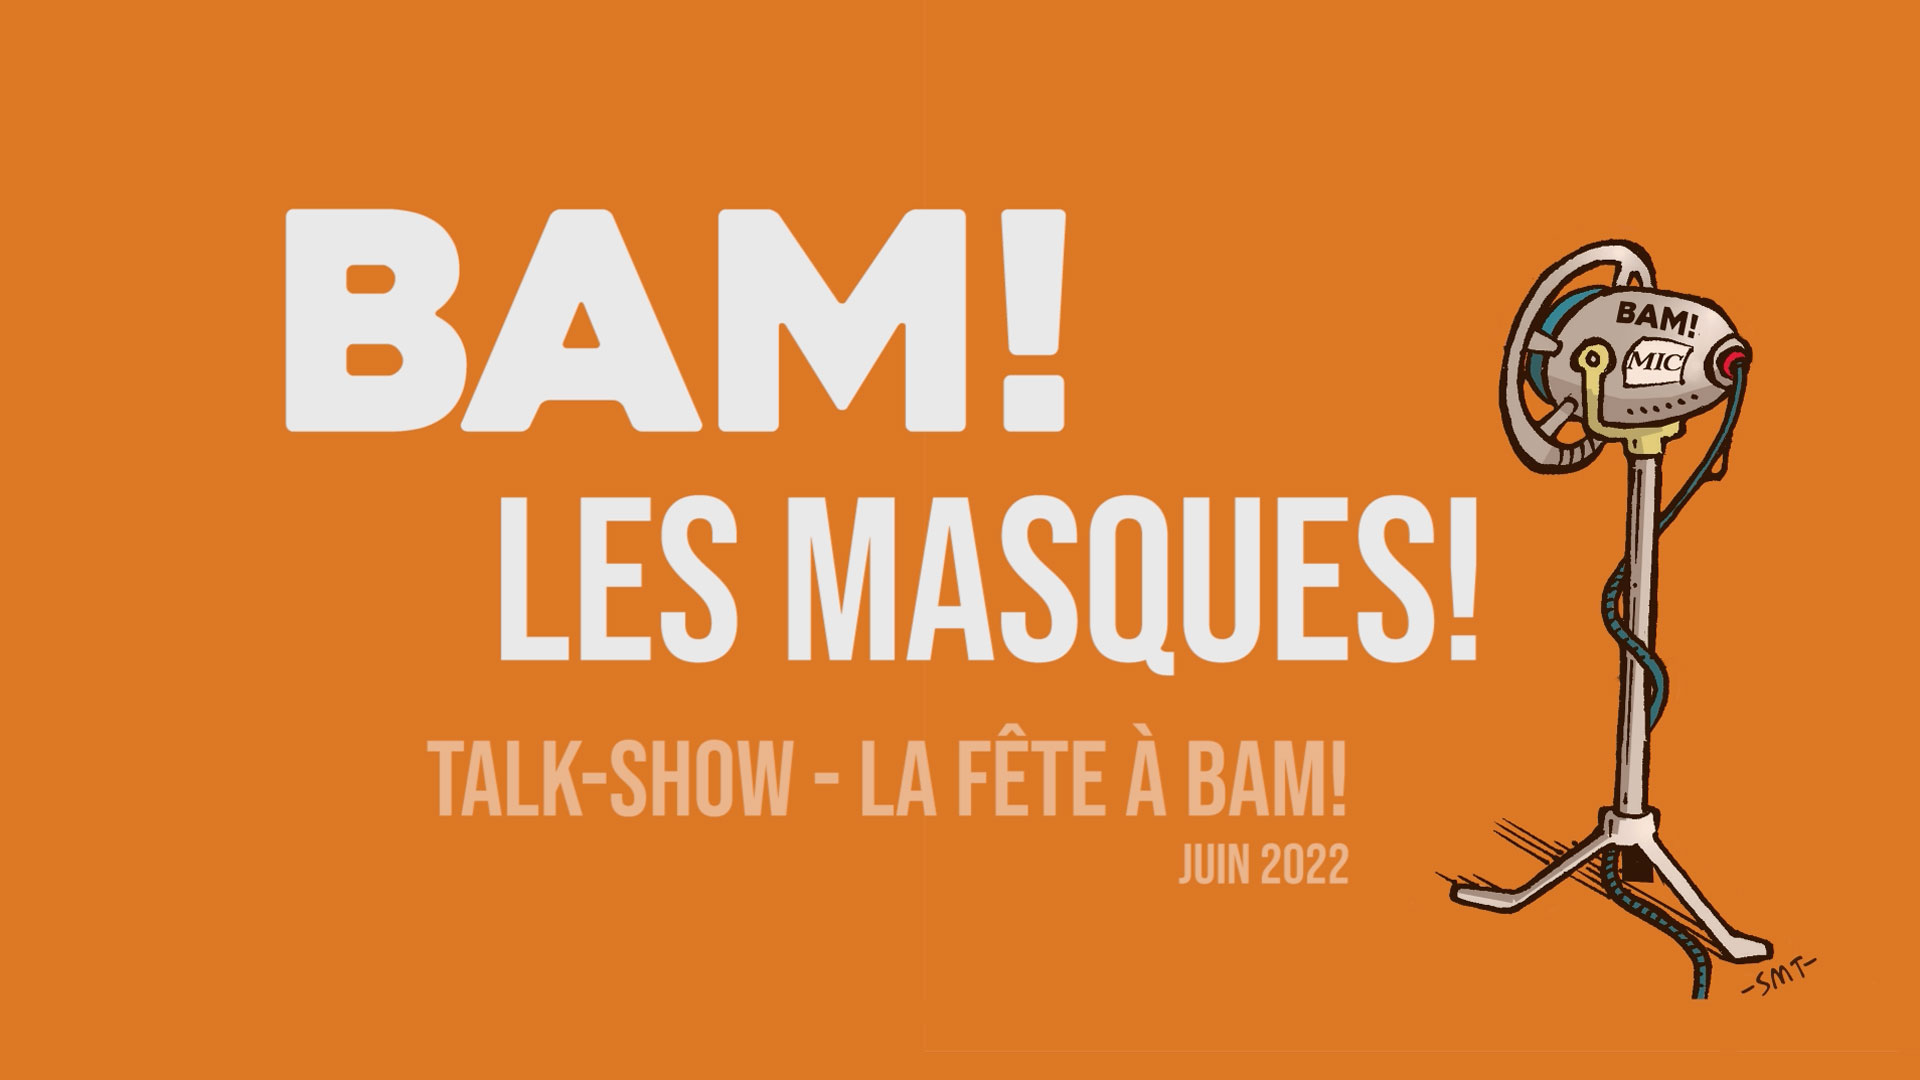 BAM! News - Talk-Show : BAM! LES MASQUES - LA FÊTE à BAM! 